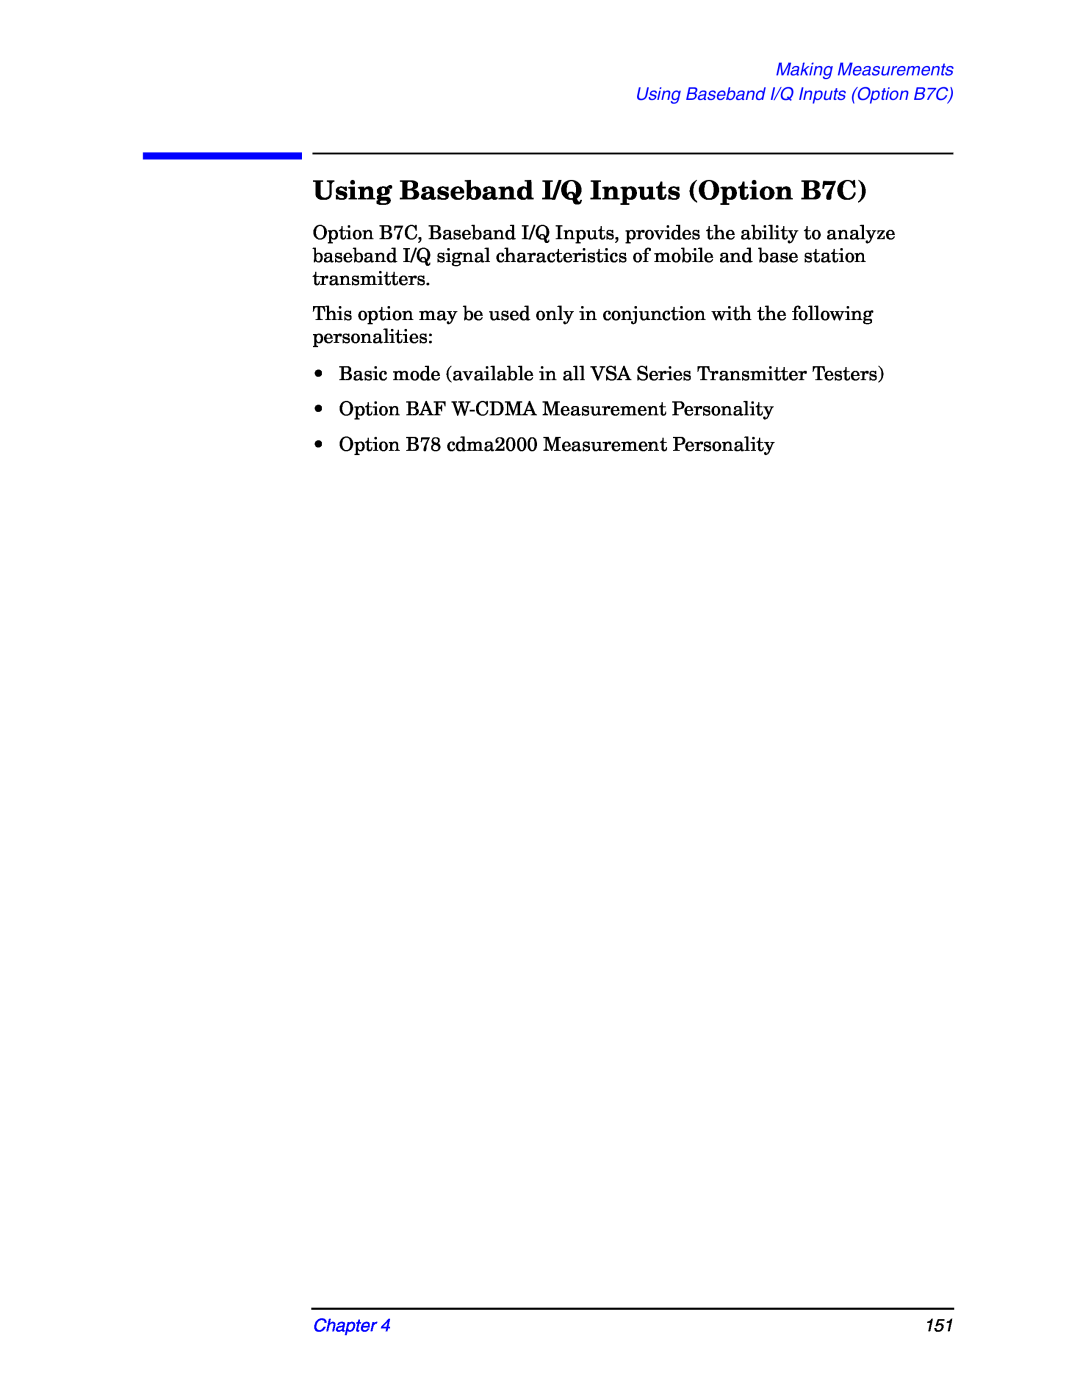 Agilent Technologies E4406A manual Using Baseband I/Q Inputs Option B7C 